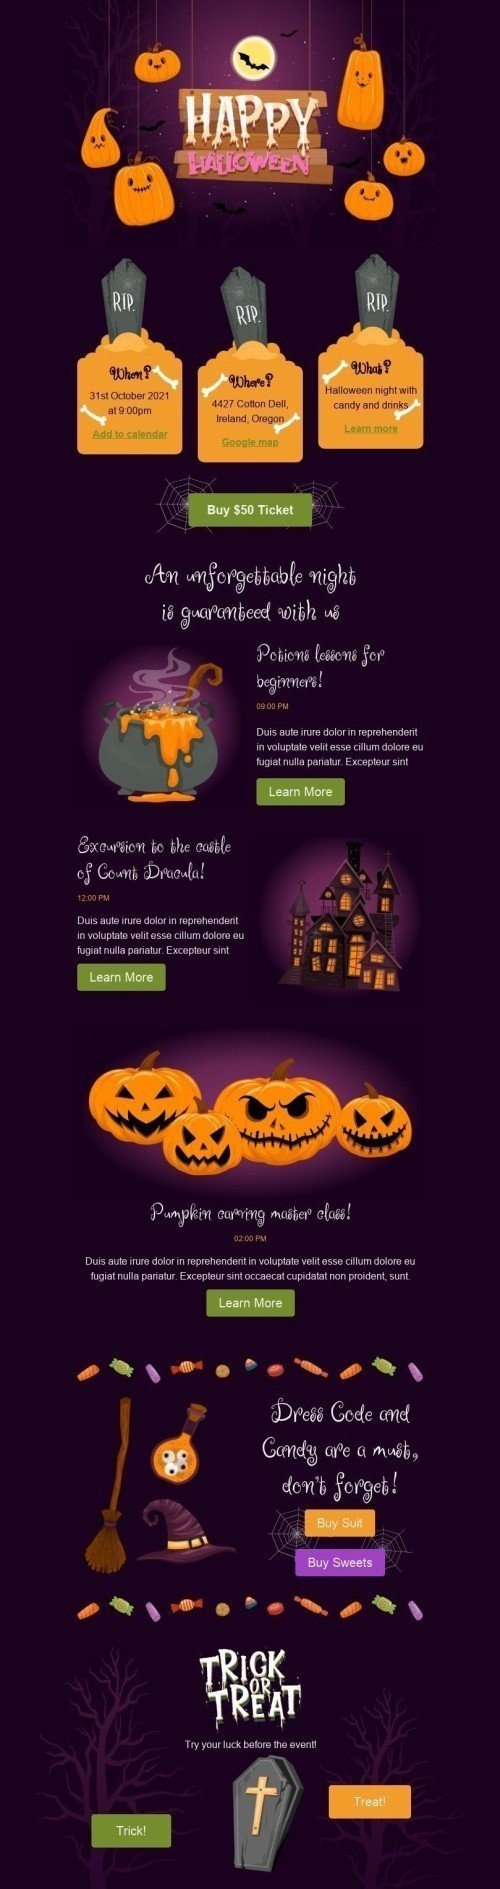 Шаблон письма к празднику Хэллоуин «Ночь Хэллоуина» для индустрии «Хобби» мобильный вид